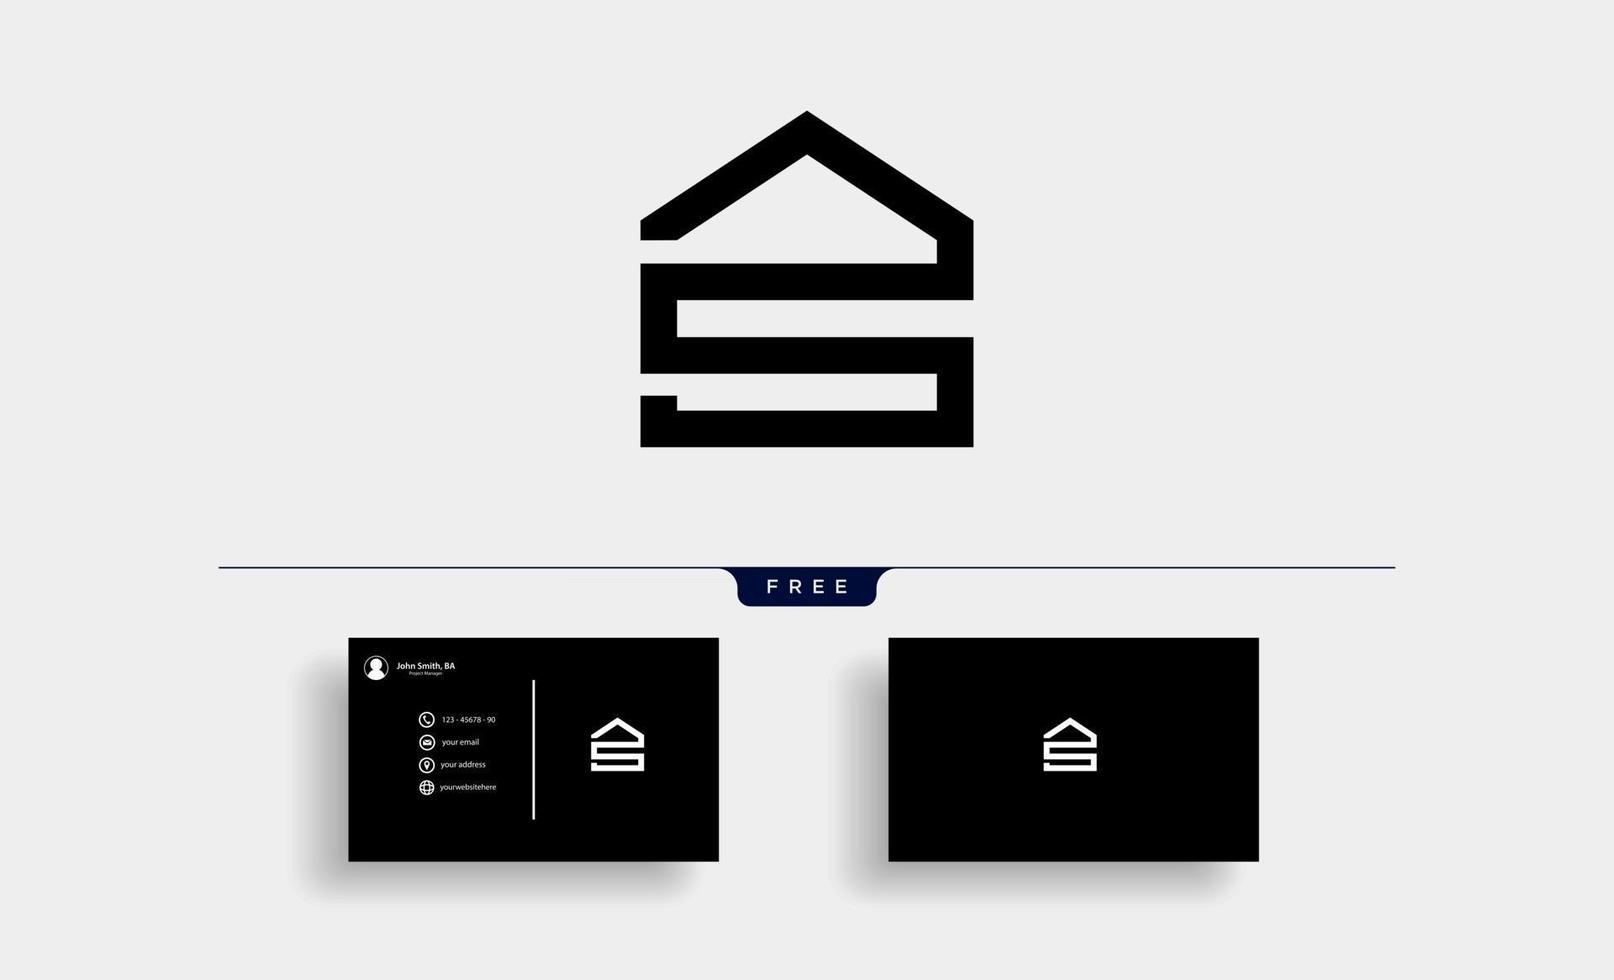 Lettre s house logo design vector illustration